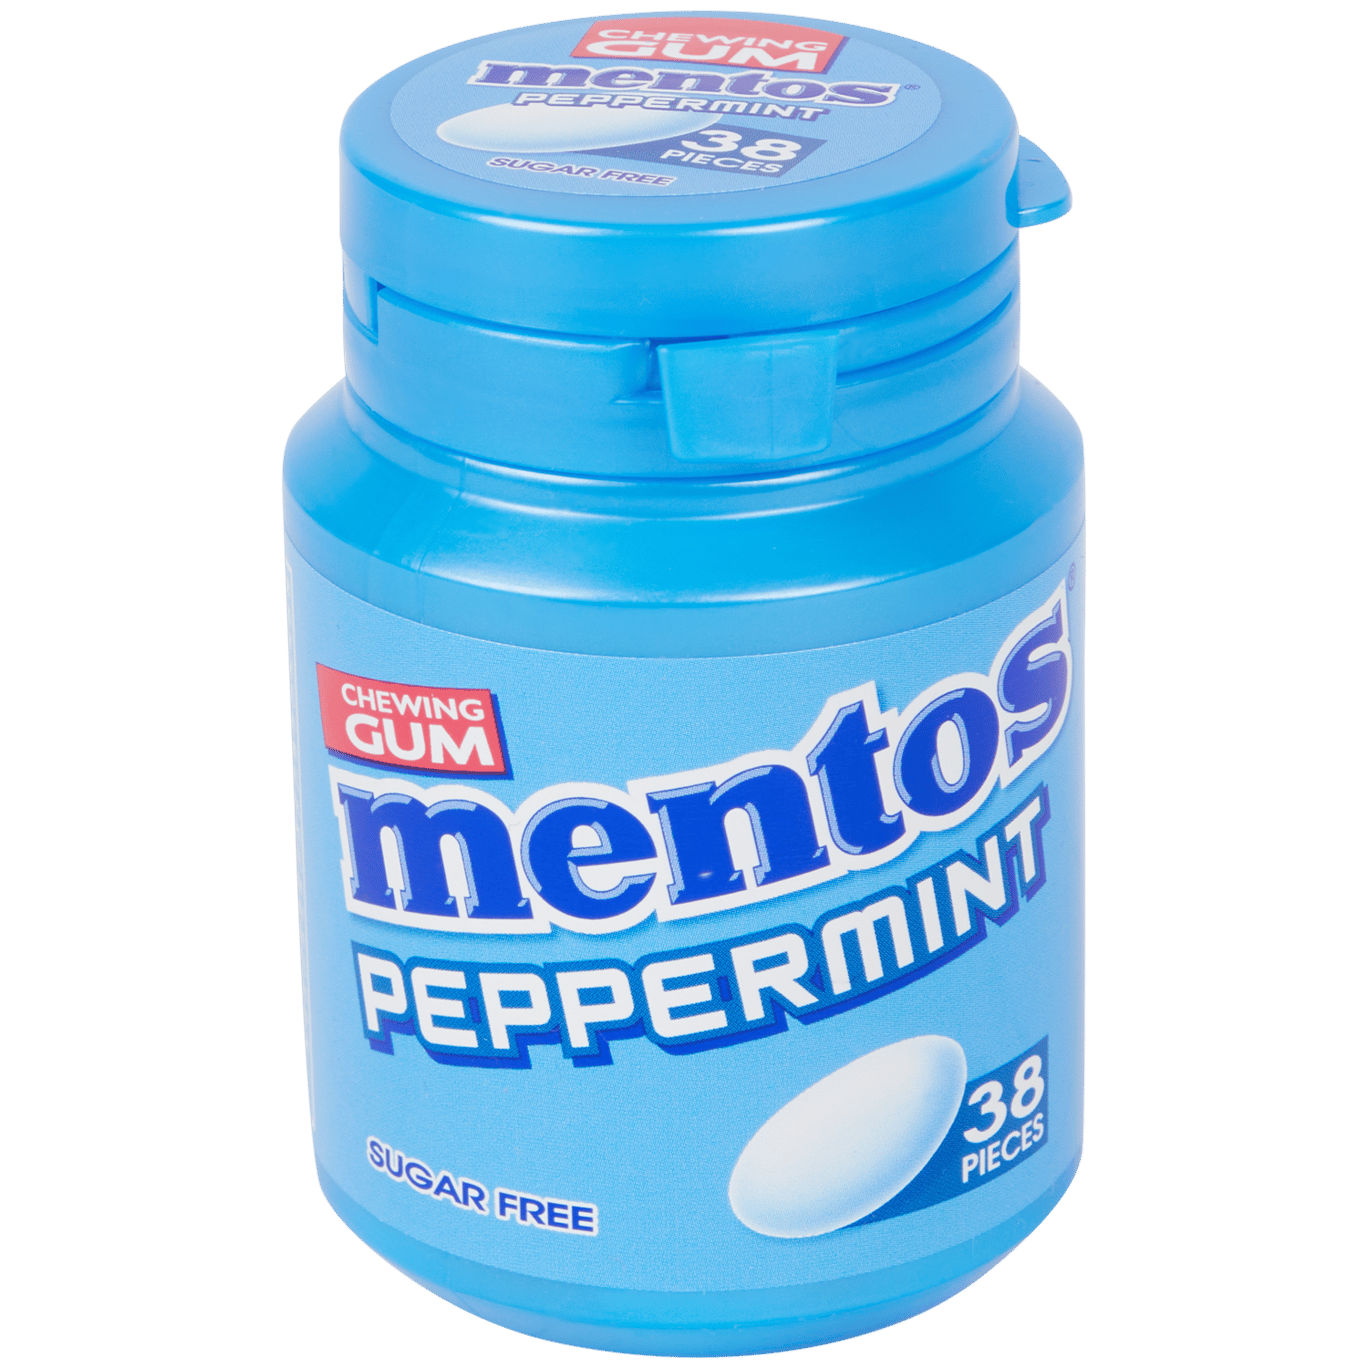 Chewing gum Mentos Menta piperita